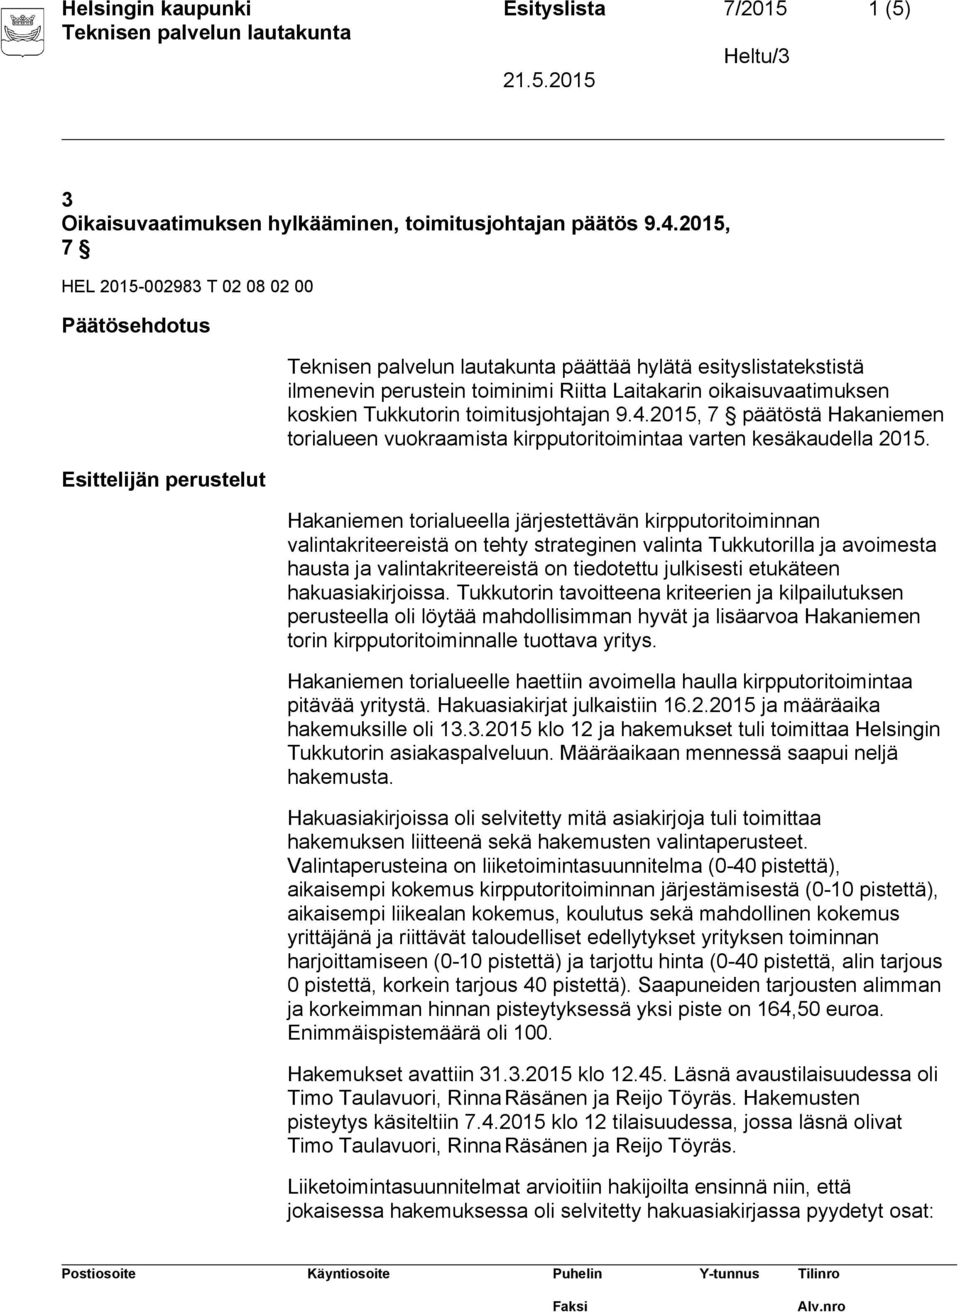 toimitusjohtajan 9.4.2015, 7 päätöstä Hakaniemen torialueen vuokraamista kirpputoritoimintaa varten kesäkaudella 2015.